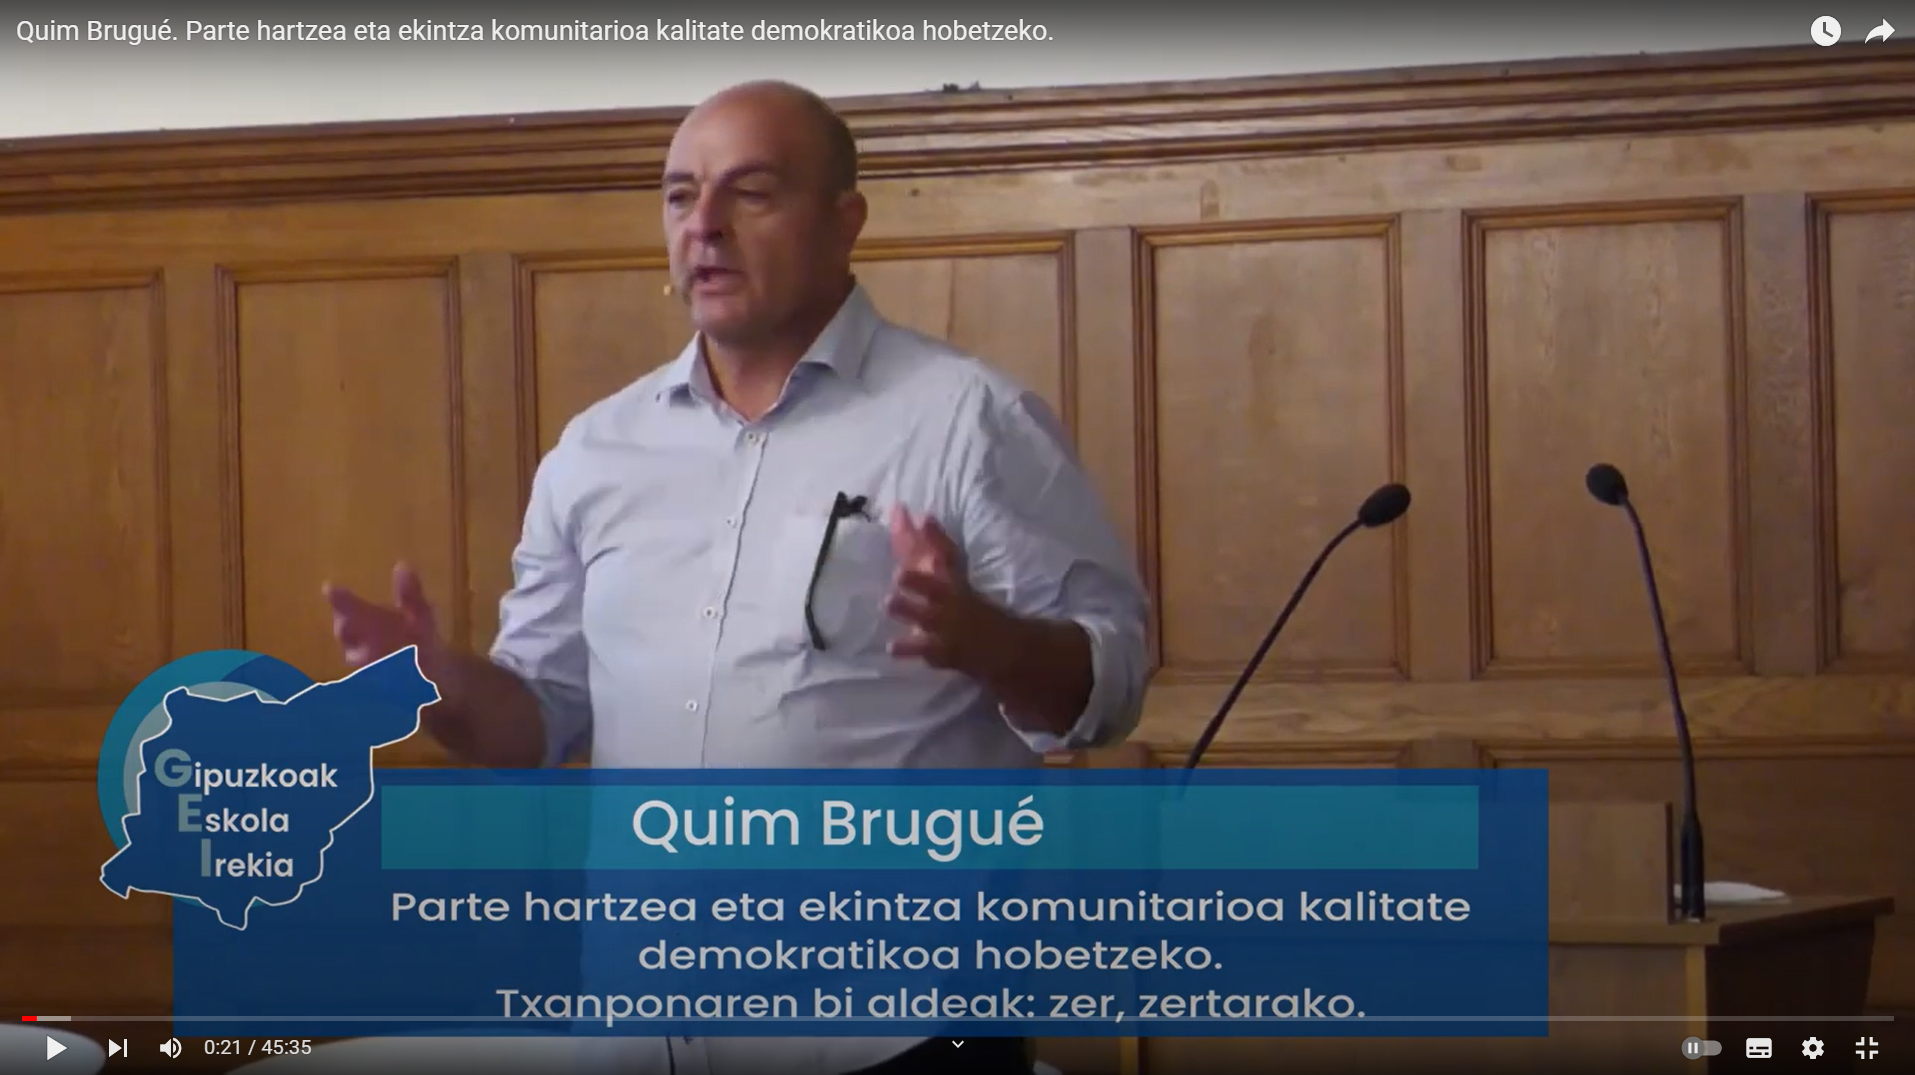 Quim Brugué Participación y acción comunitaria para mejorar la calidad democrática. Las dos caras de la moneda: qué, para qué.